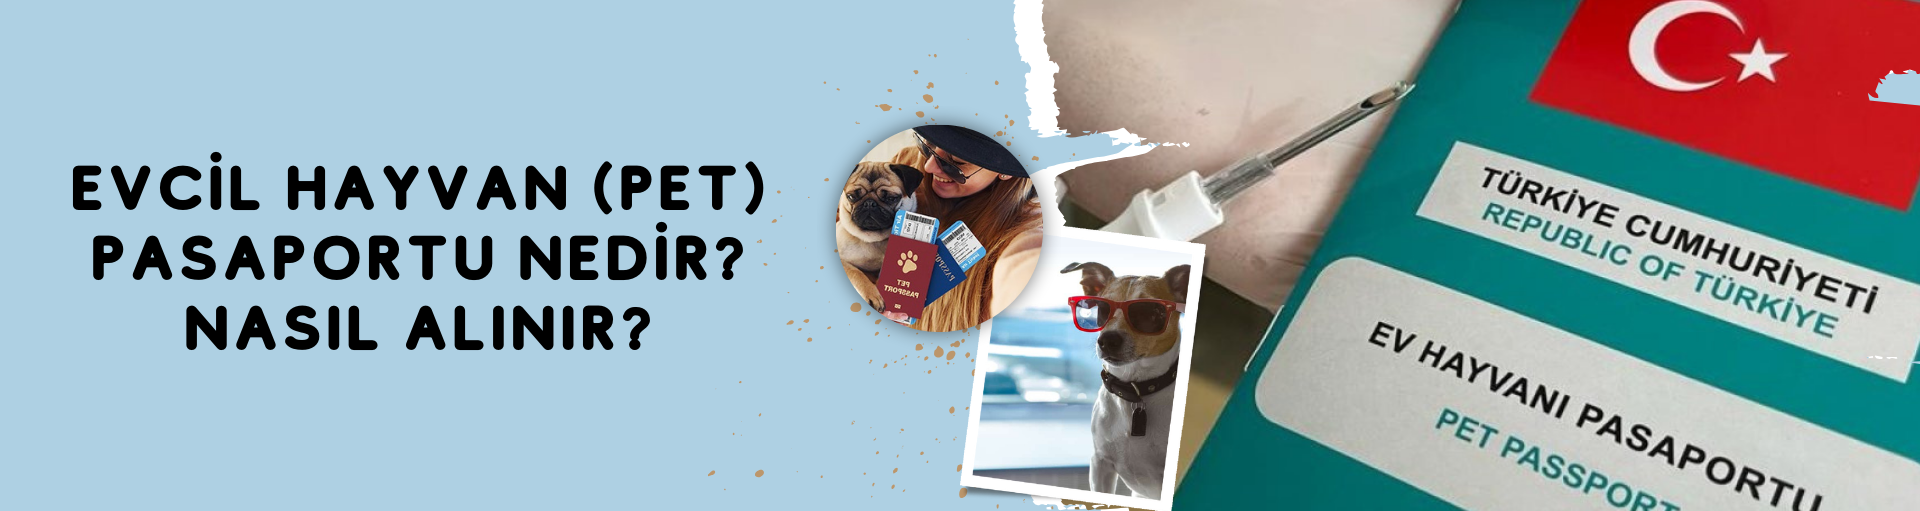 Evcil Hayvan (Pet) Pasaportu Nedir? Nasıl Alınır?